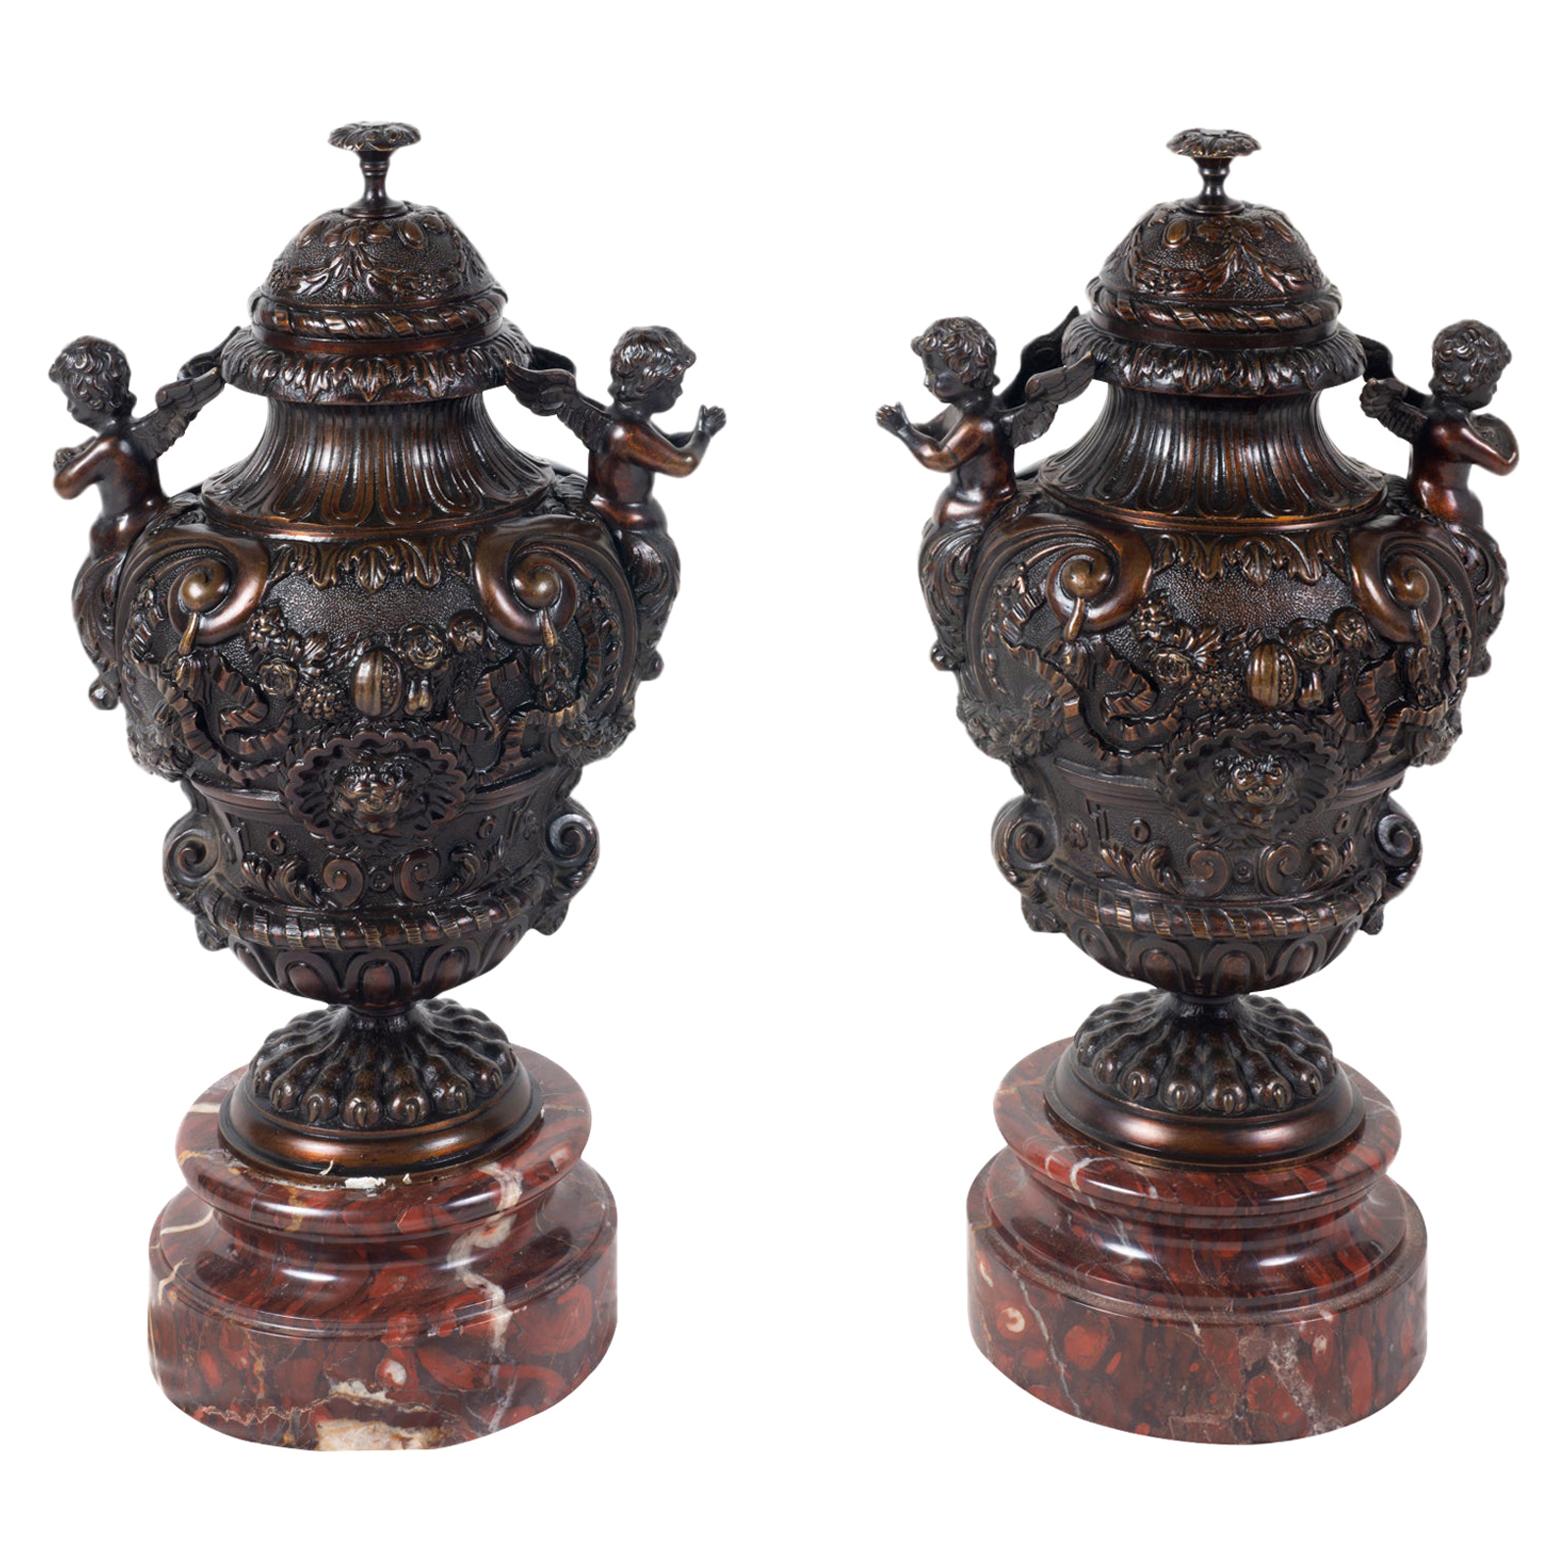 Pair of Classical 19th Century Bronze Urns